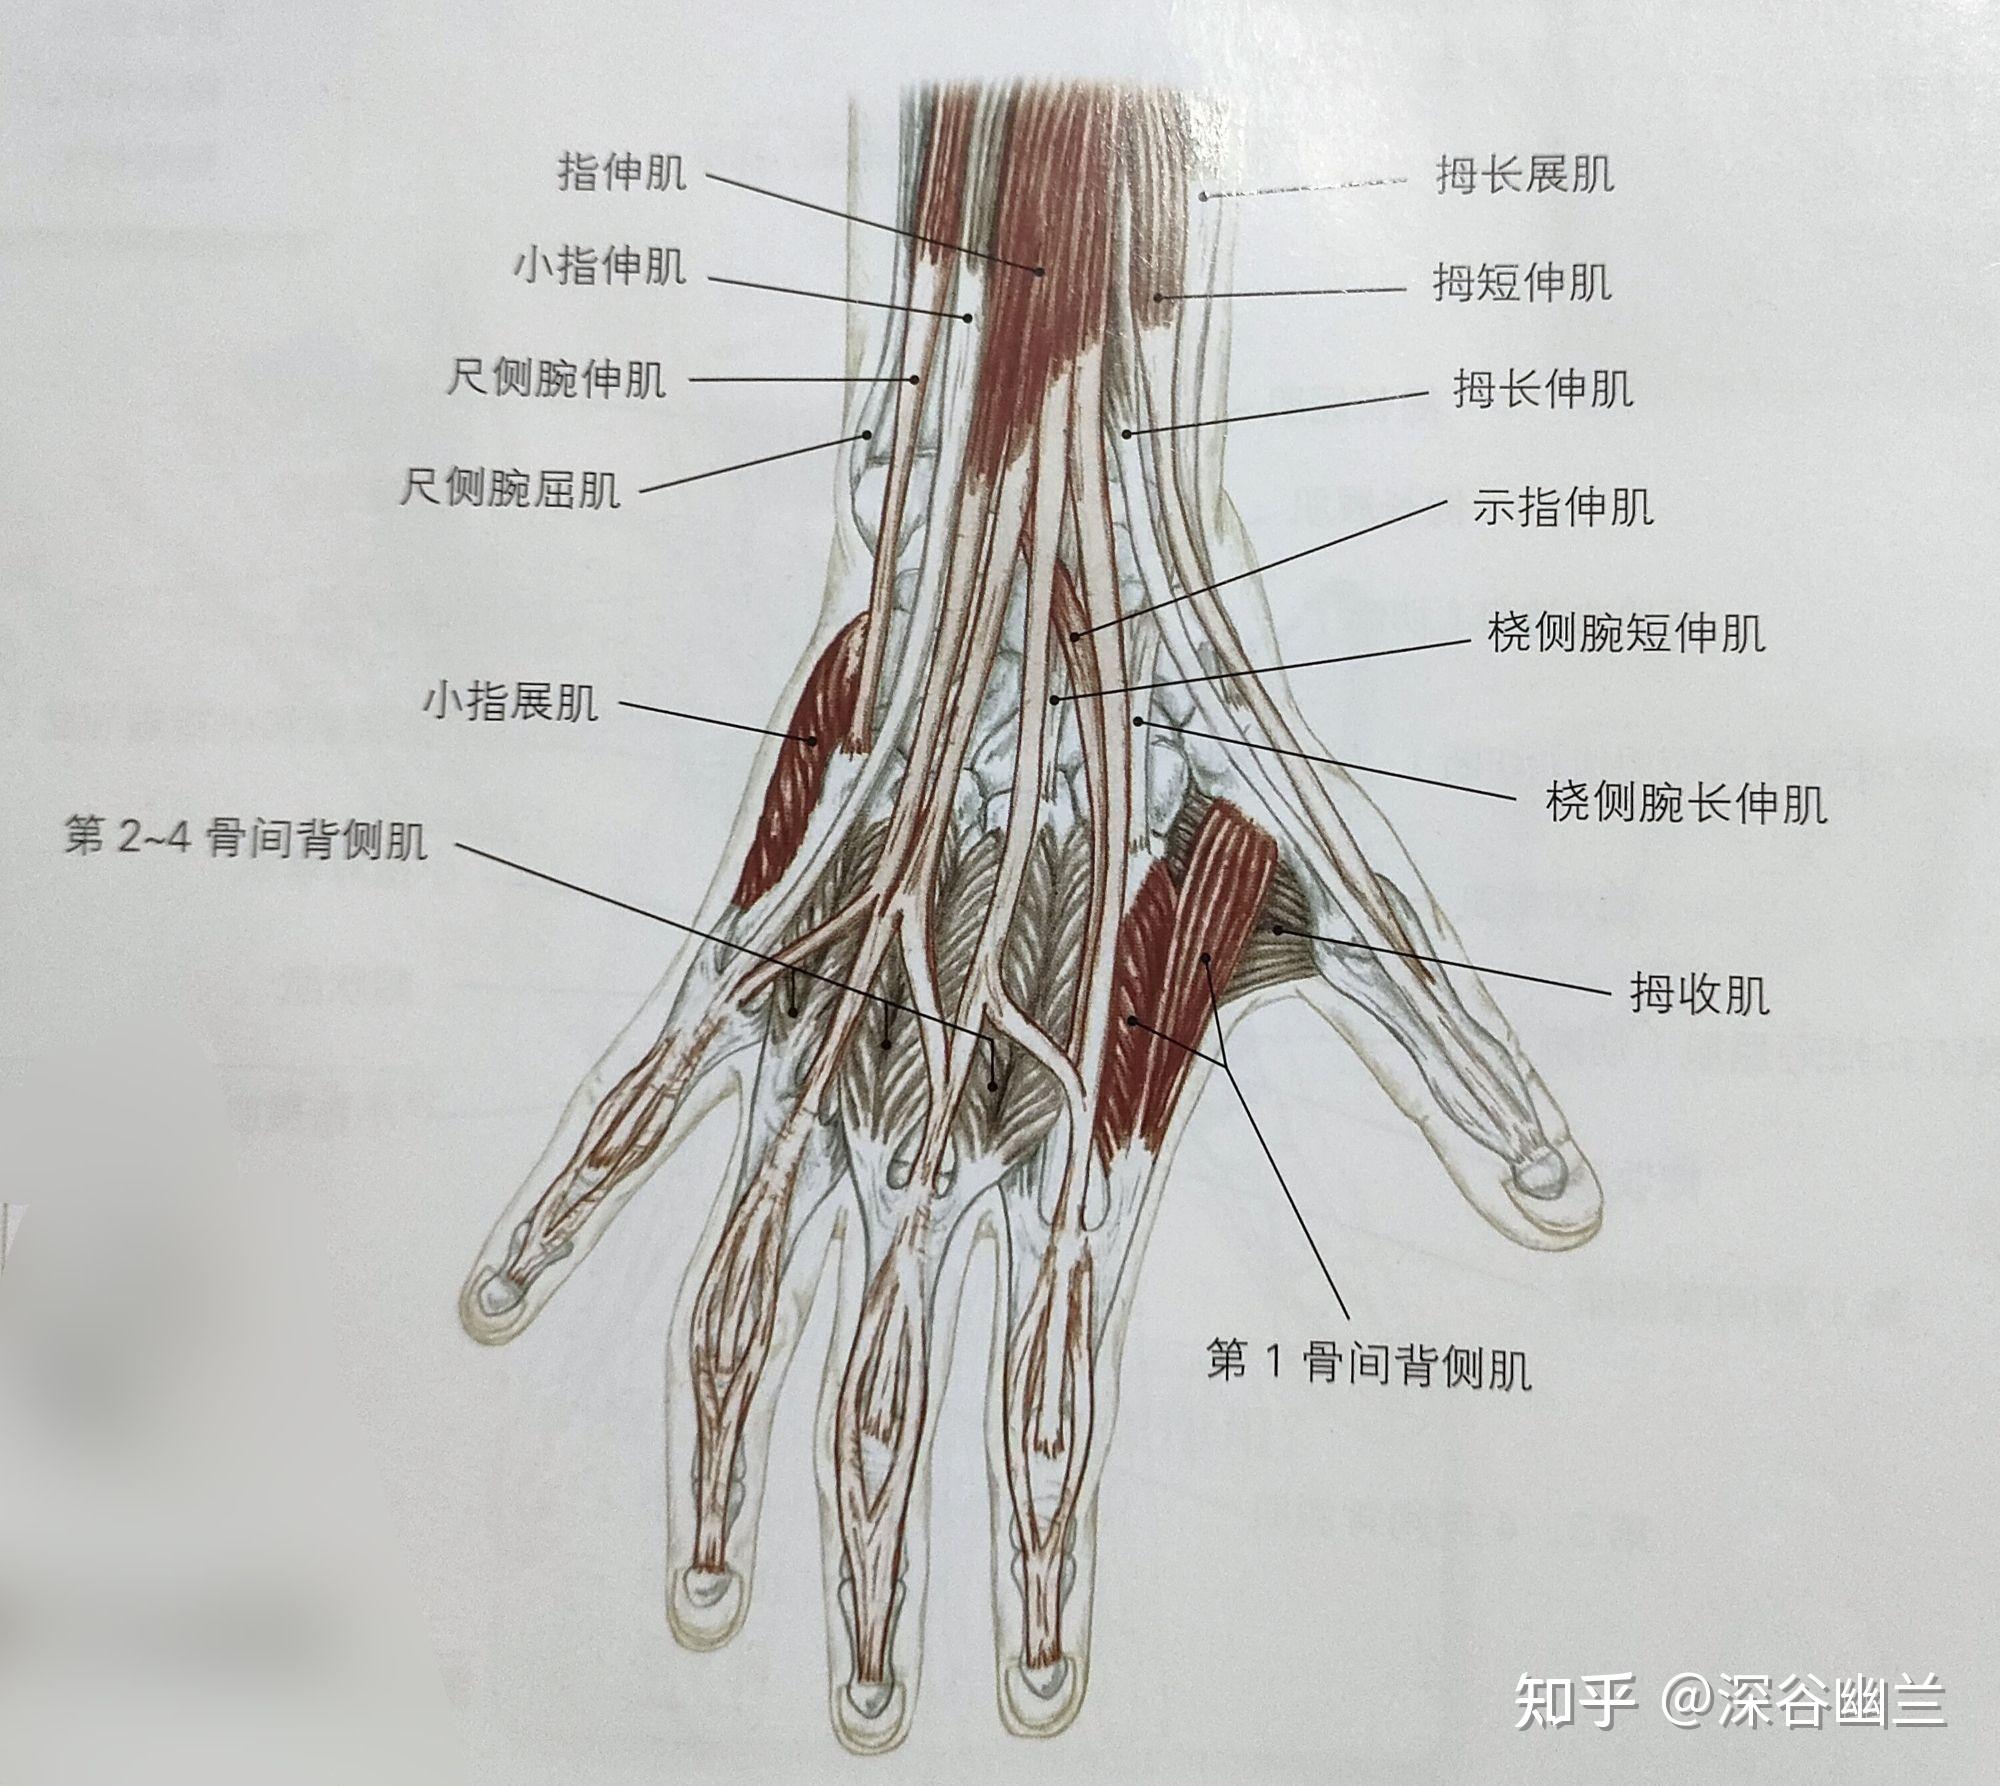 小指肌腱解剖图解图片